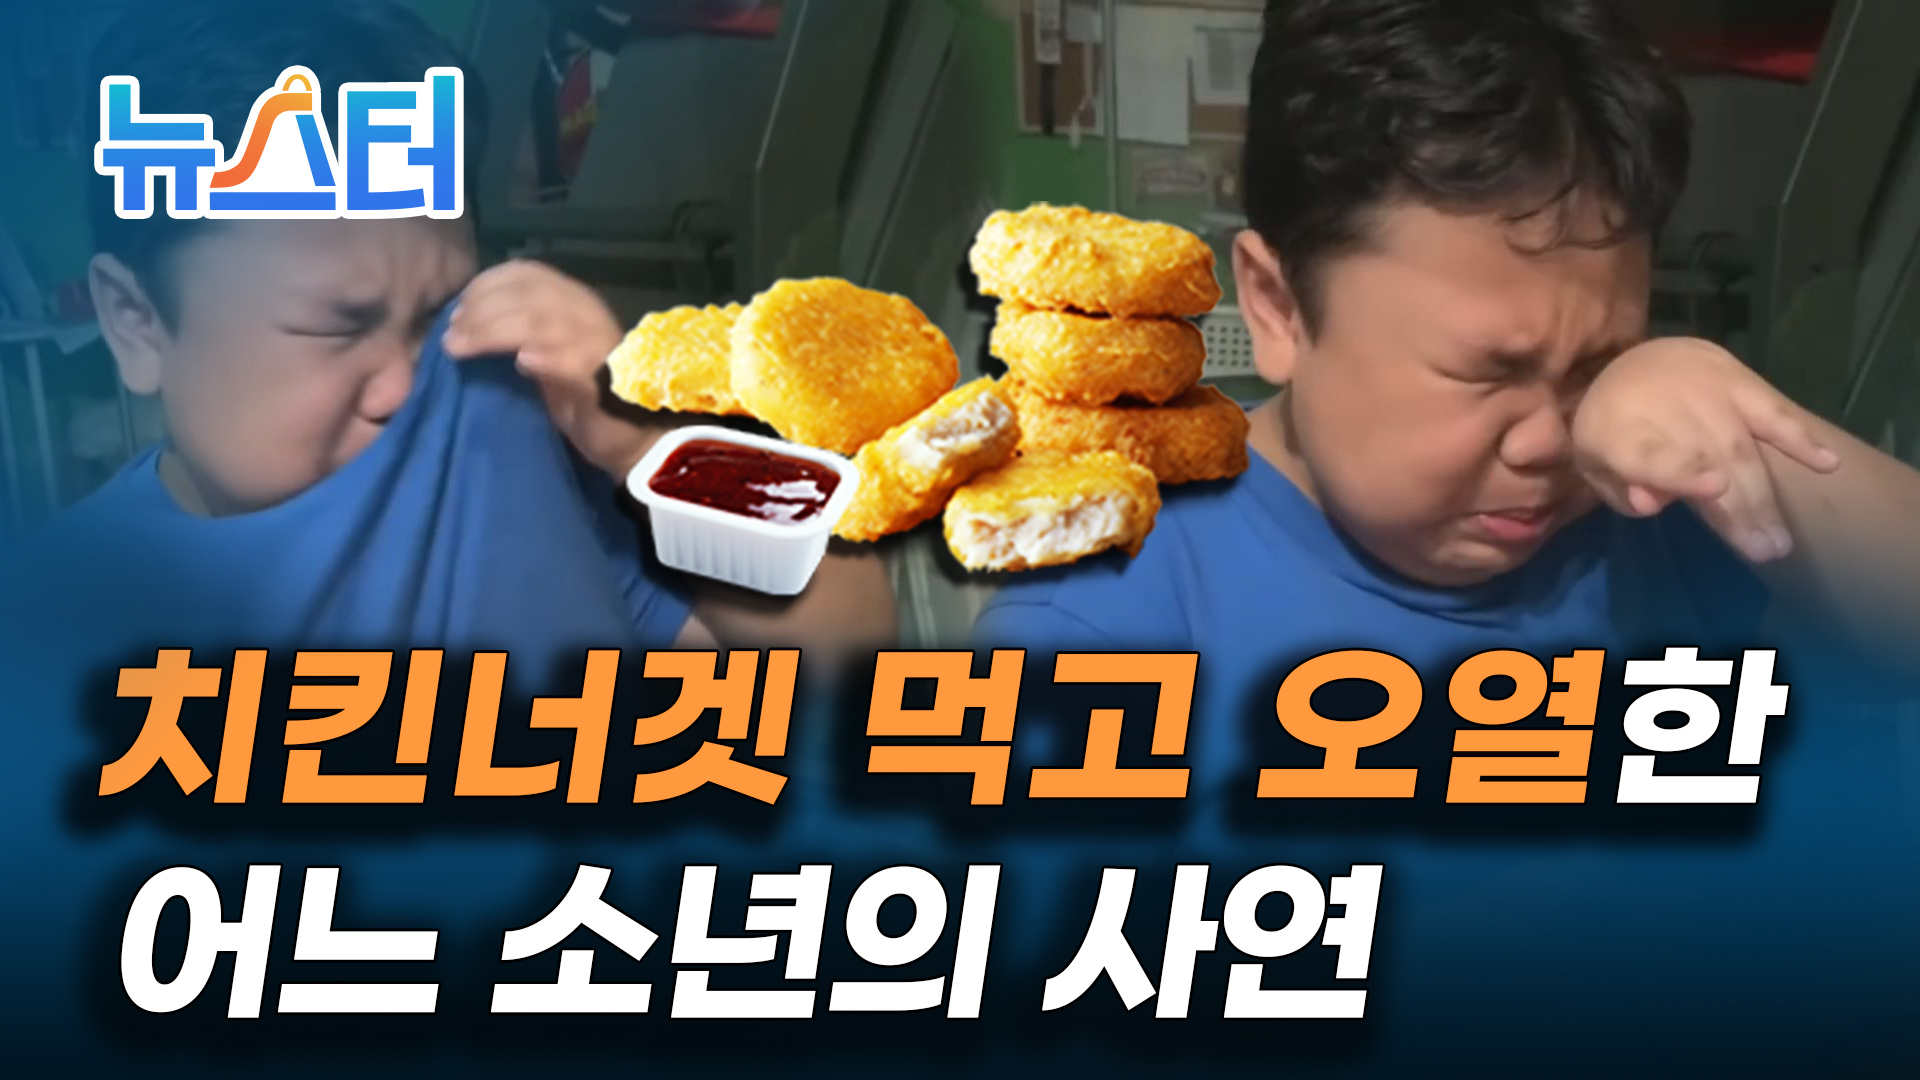 조회수 폭발한 9살 소년의 눈물😭 치킨너겟 먹방!🍟 사연은? [뉴스터] 게시글 이미지